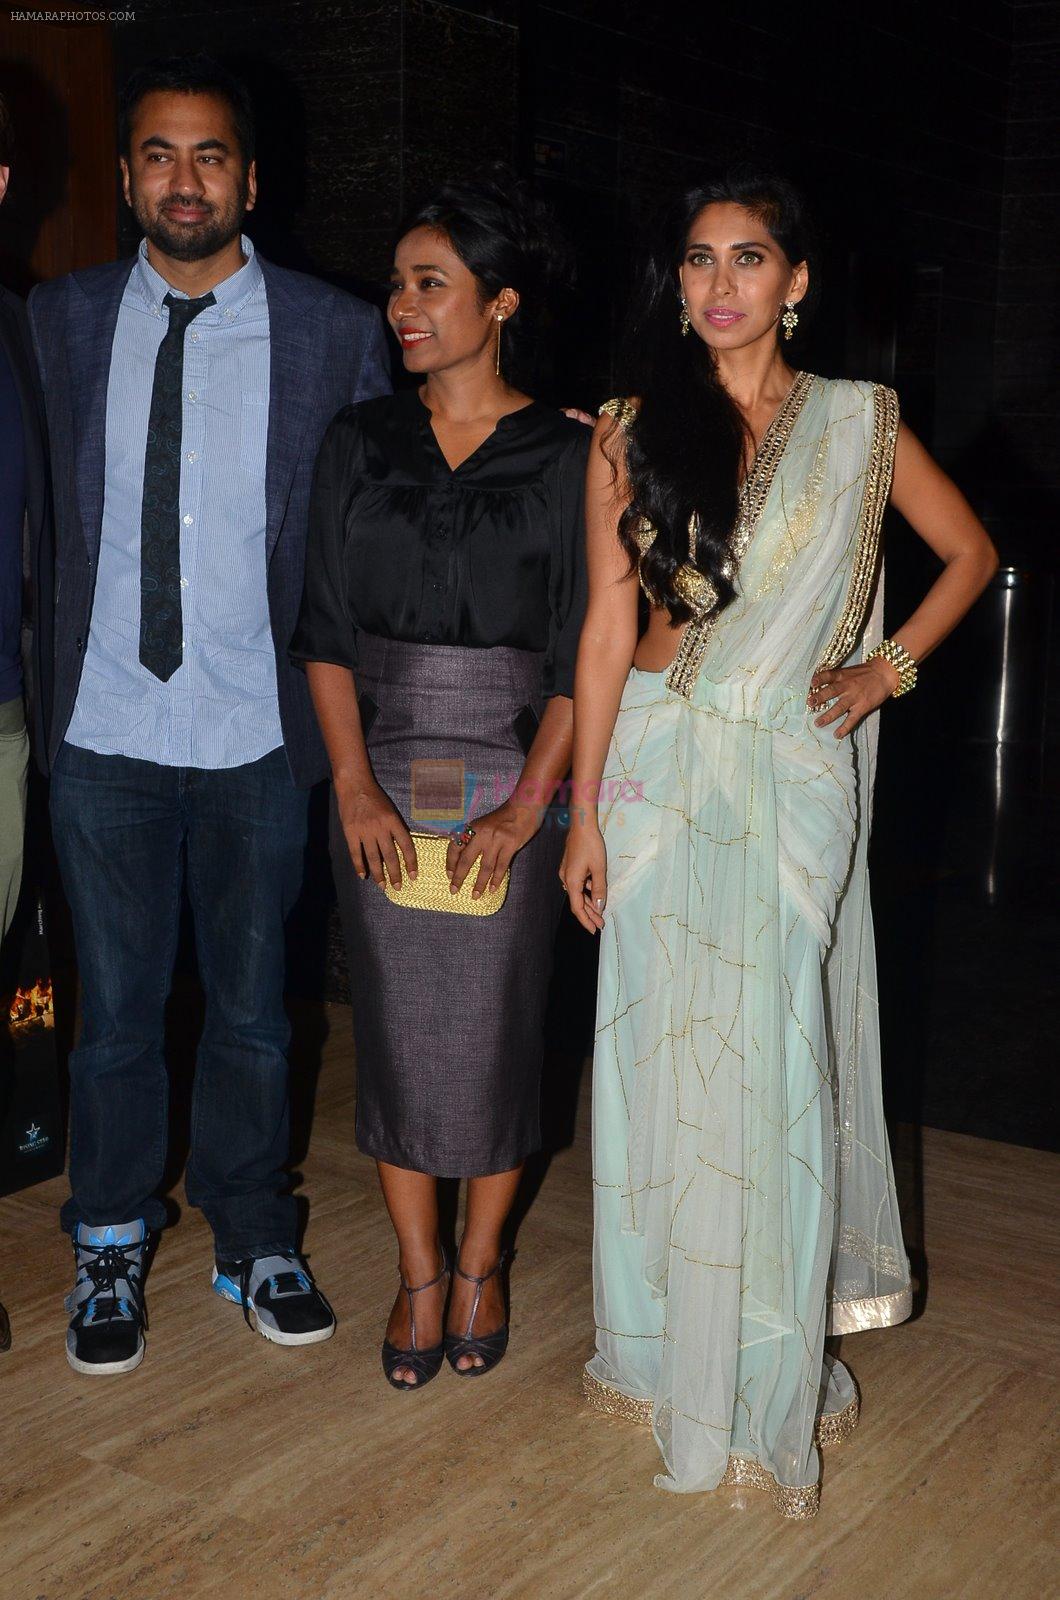 Tannishtha Chatterjee,  Kal Penn, Fagun Thakrar  at Bhopal film premiere in Mumbai on 4th Dec 2014